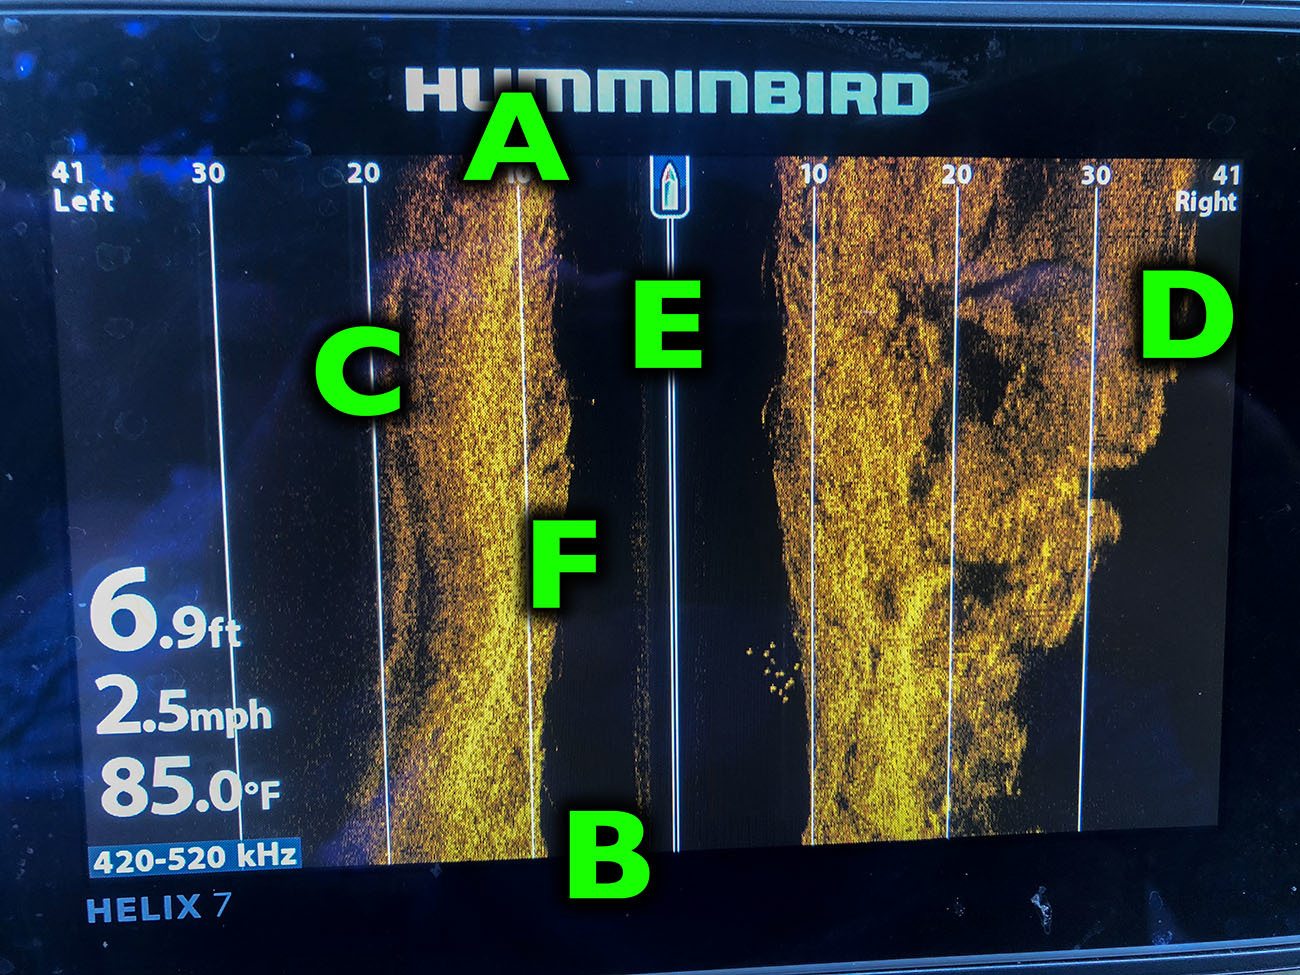 side imaging sonar labeled